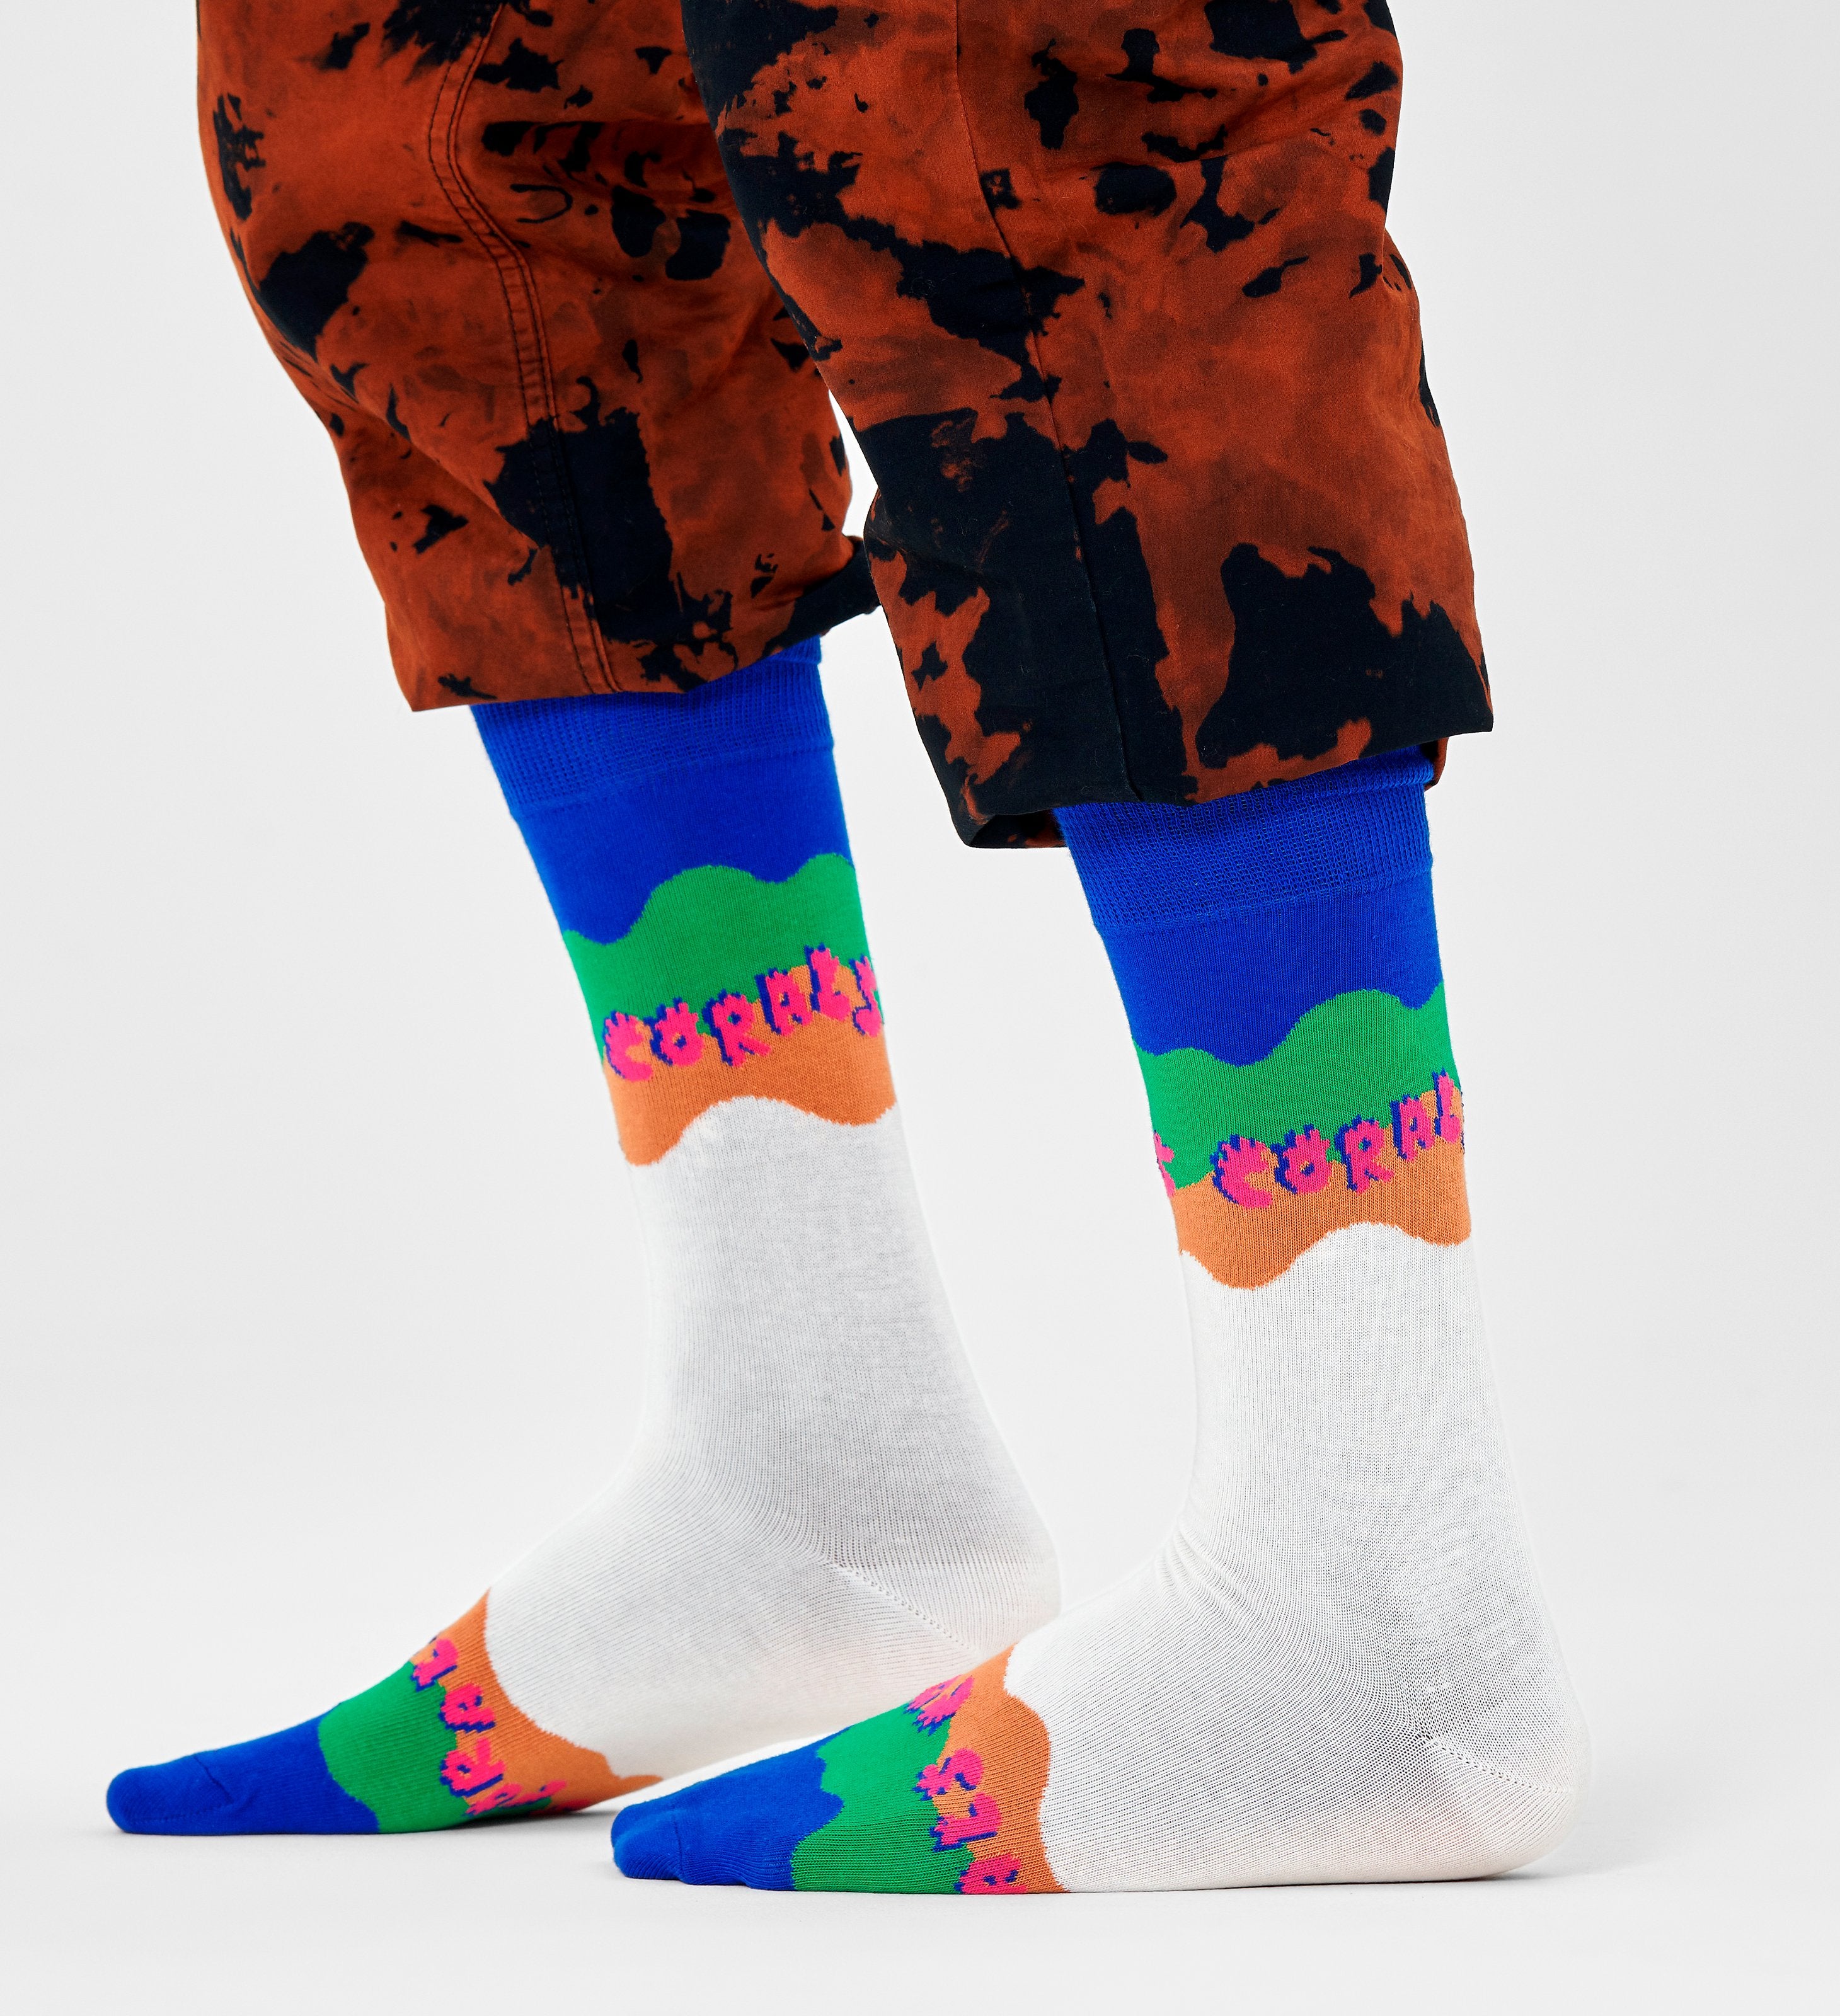 Barevné ponožky Happy Socks x WWF, vzor Coral Reef Rescue